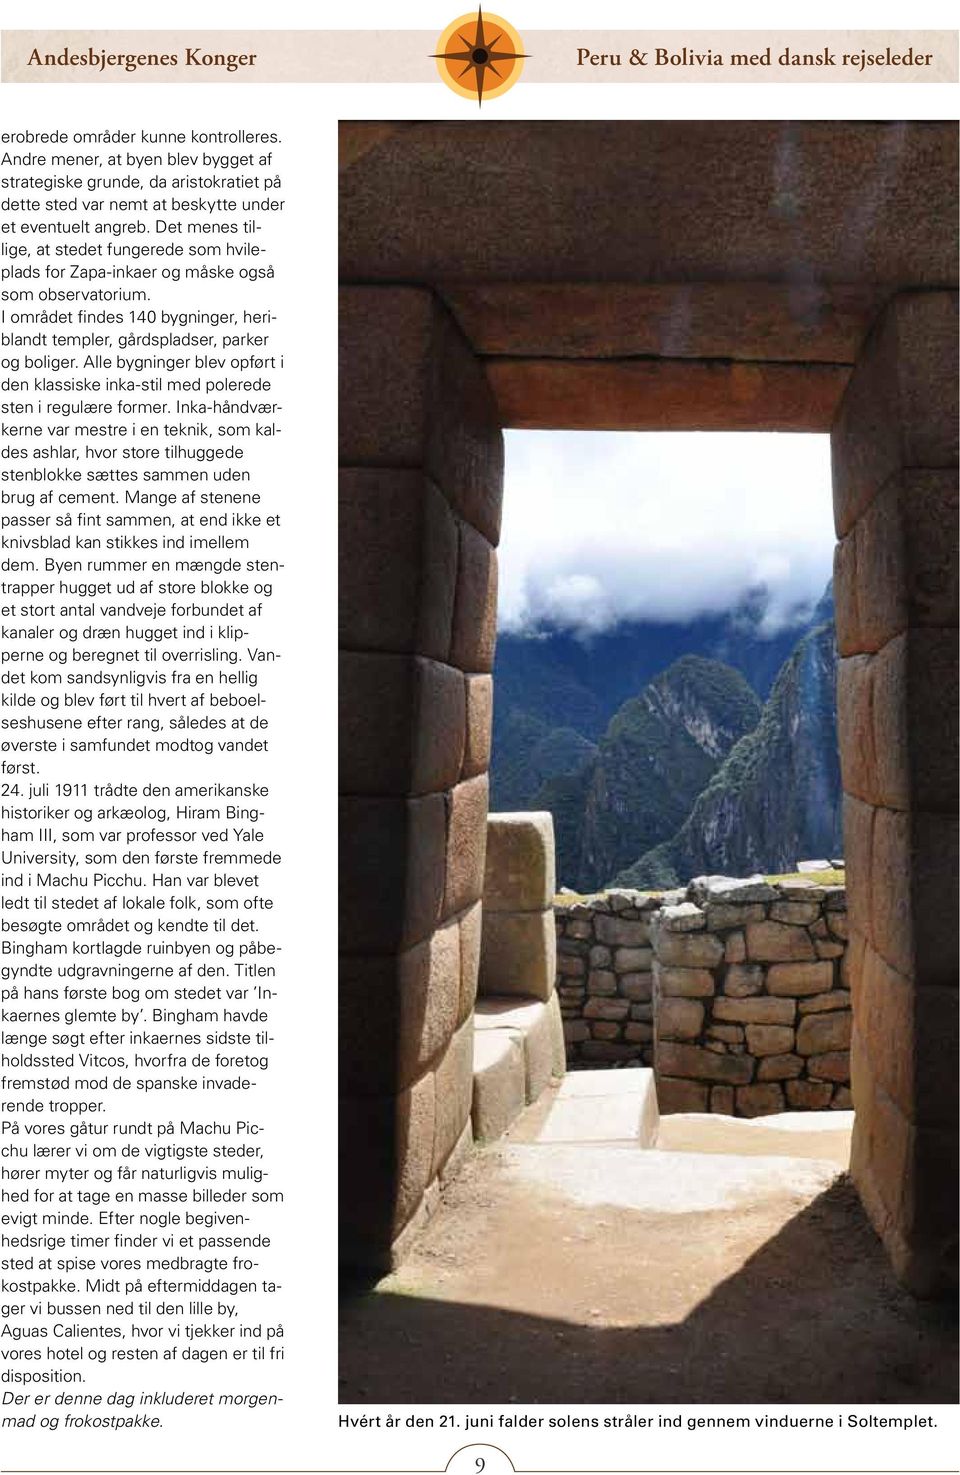 Alle bygninger blev opført i den klassiske inka-stil med polerede sten i regulære former.